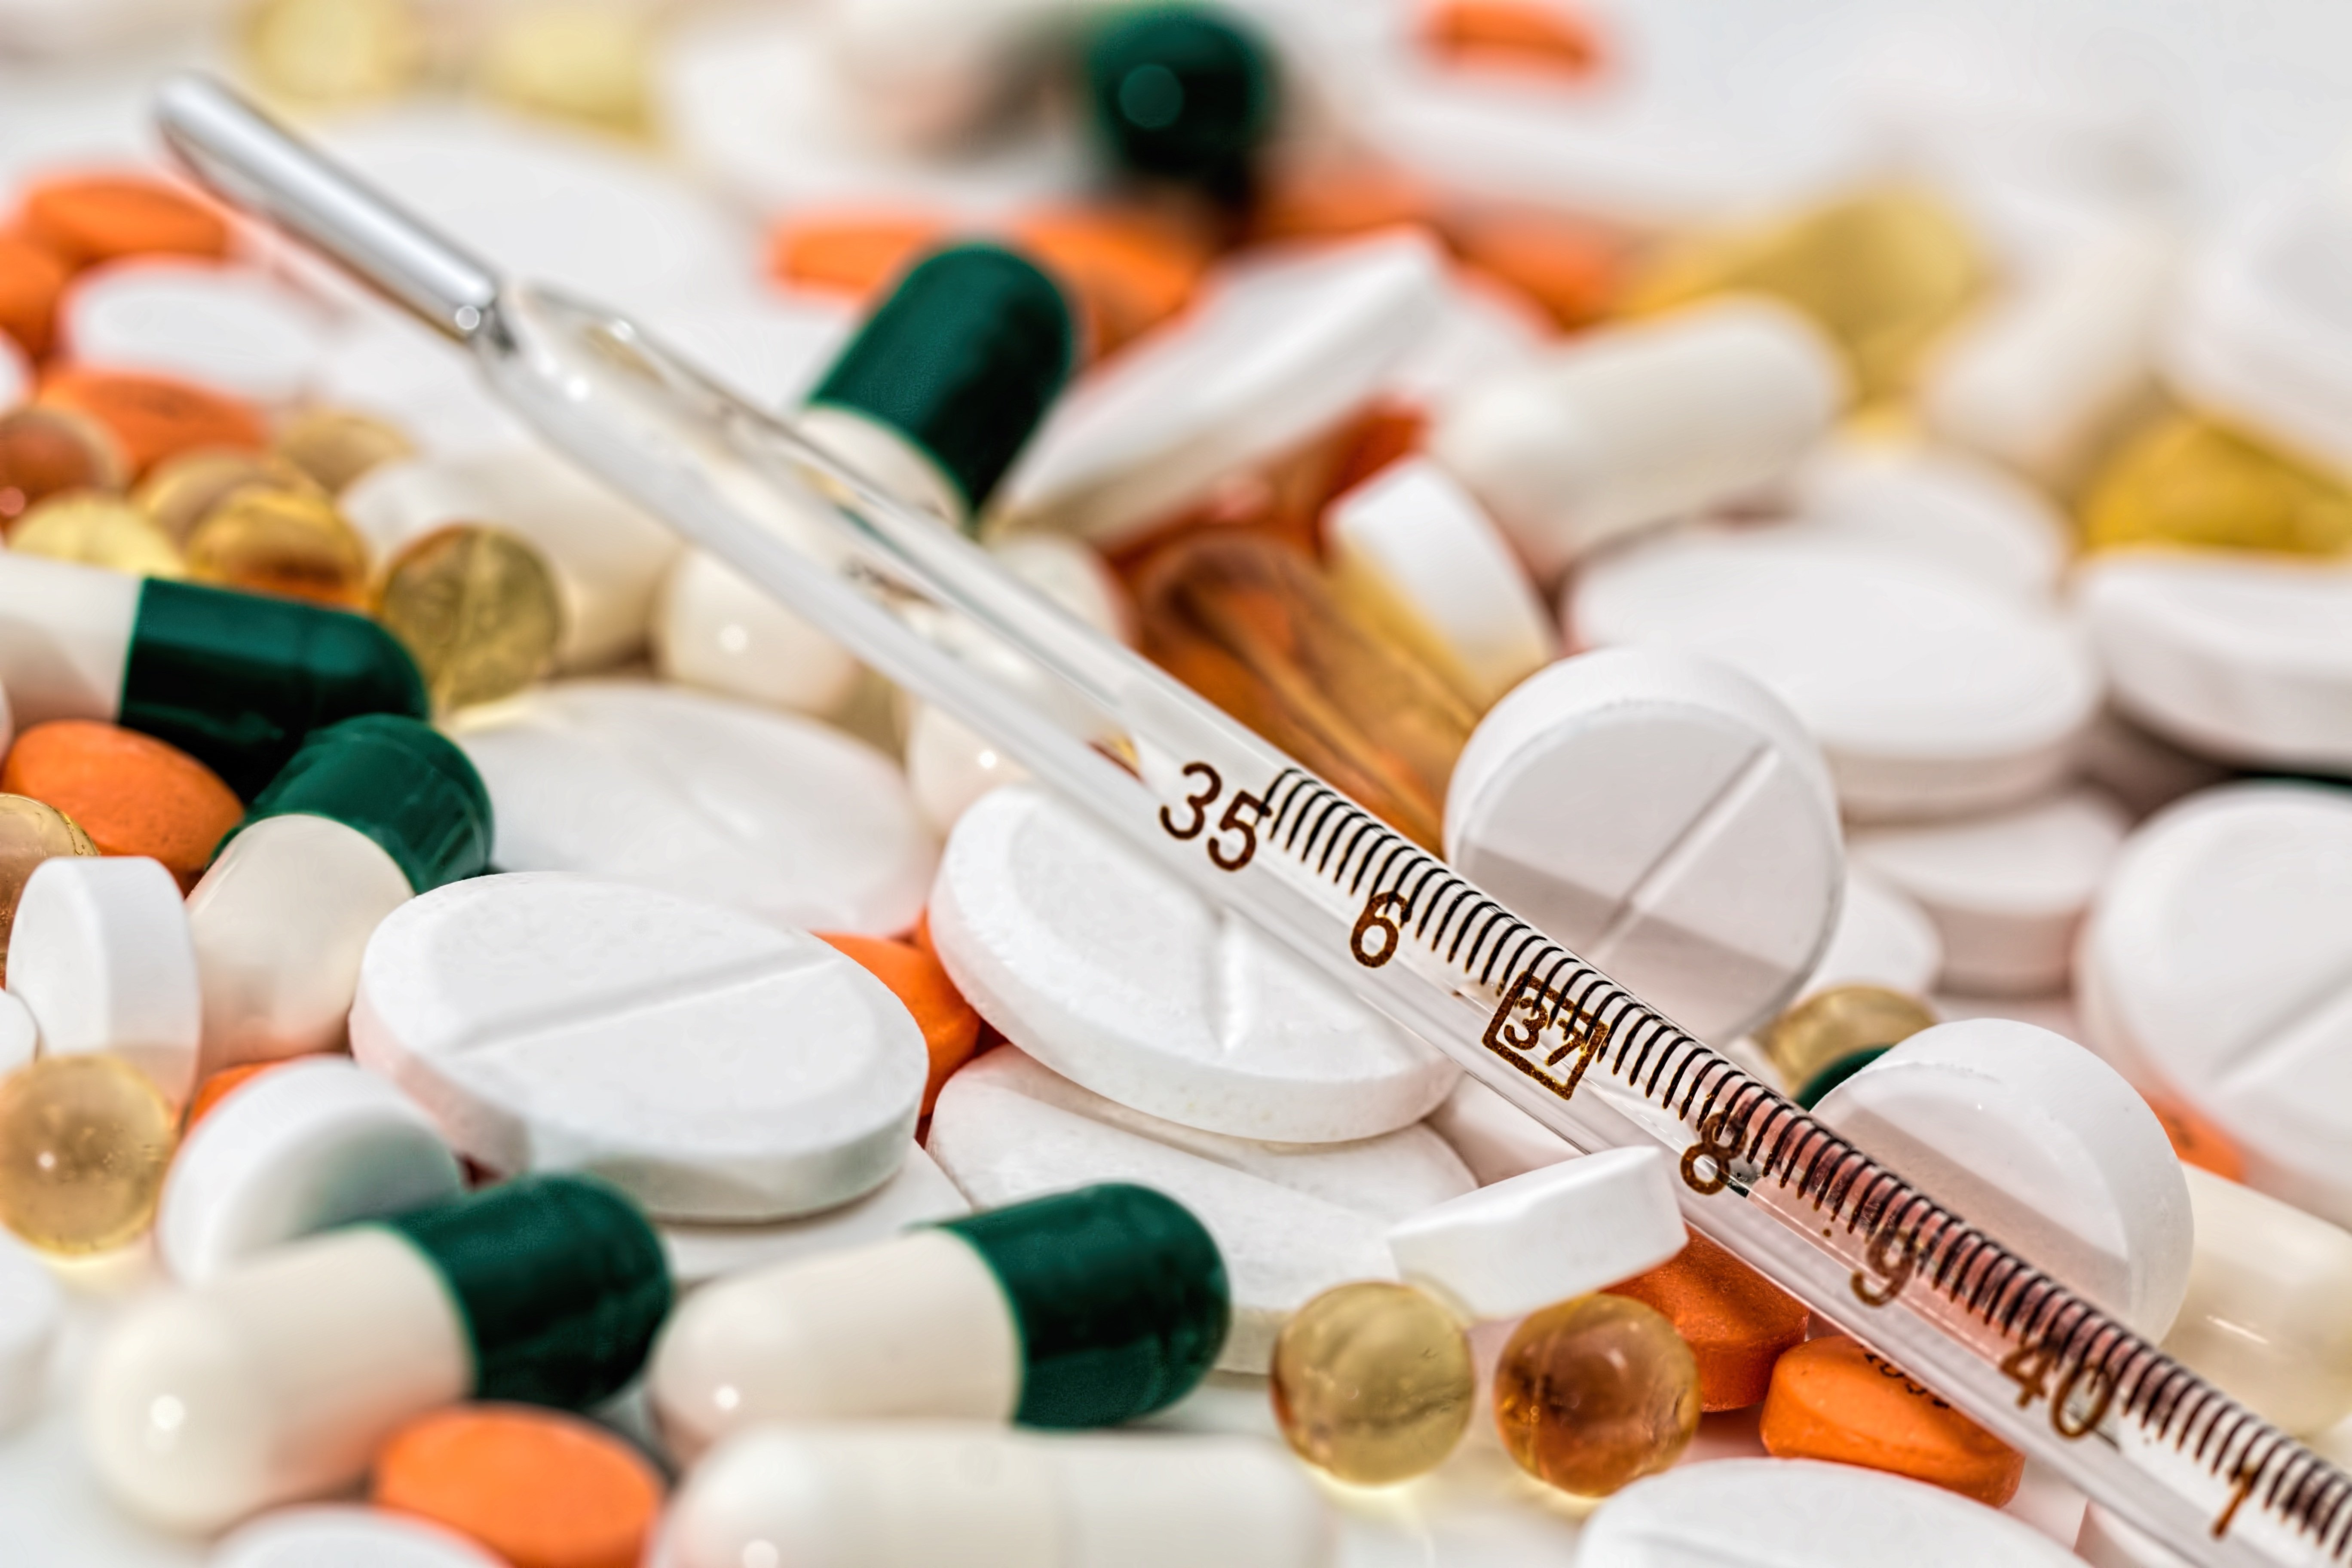 Безрецептурные лекарства во время пандемии можно заказать онлайн